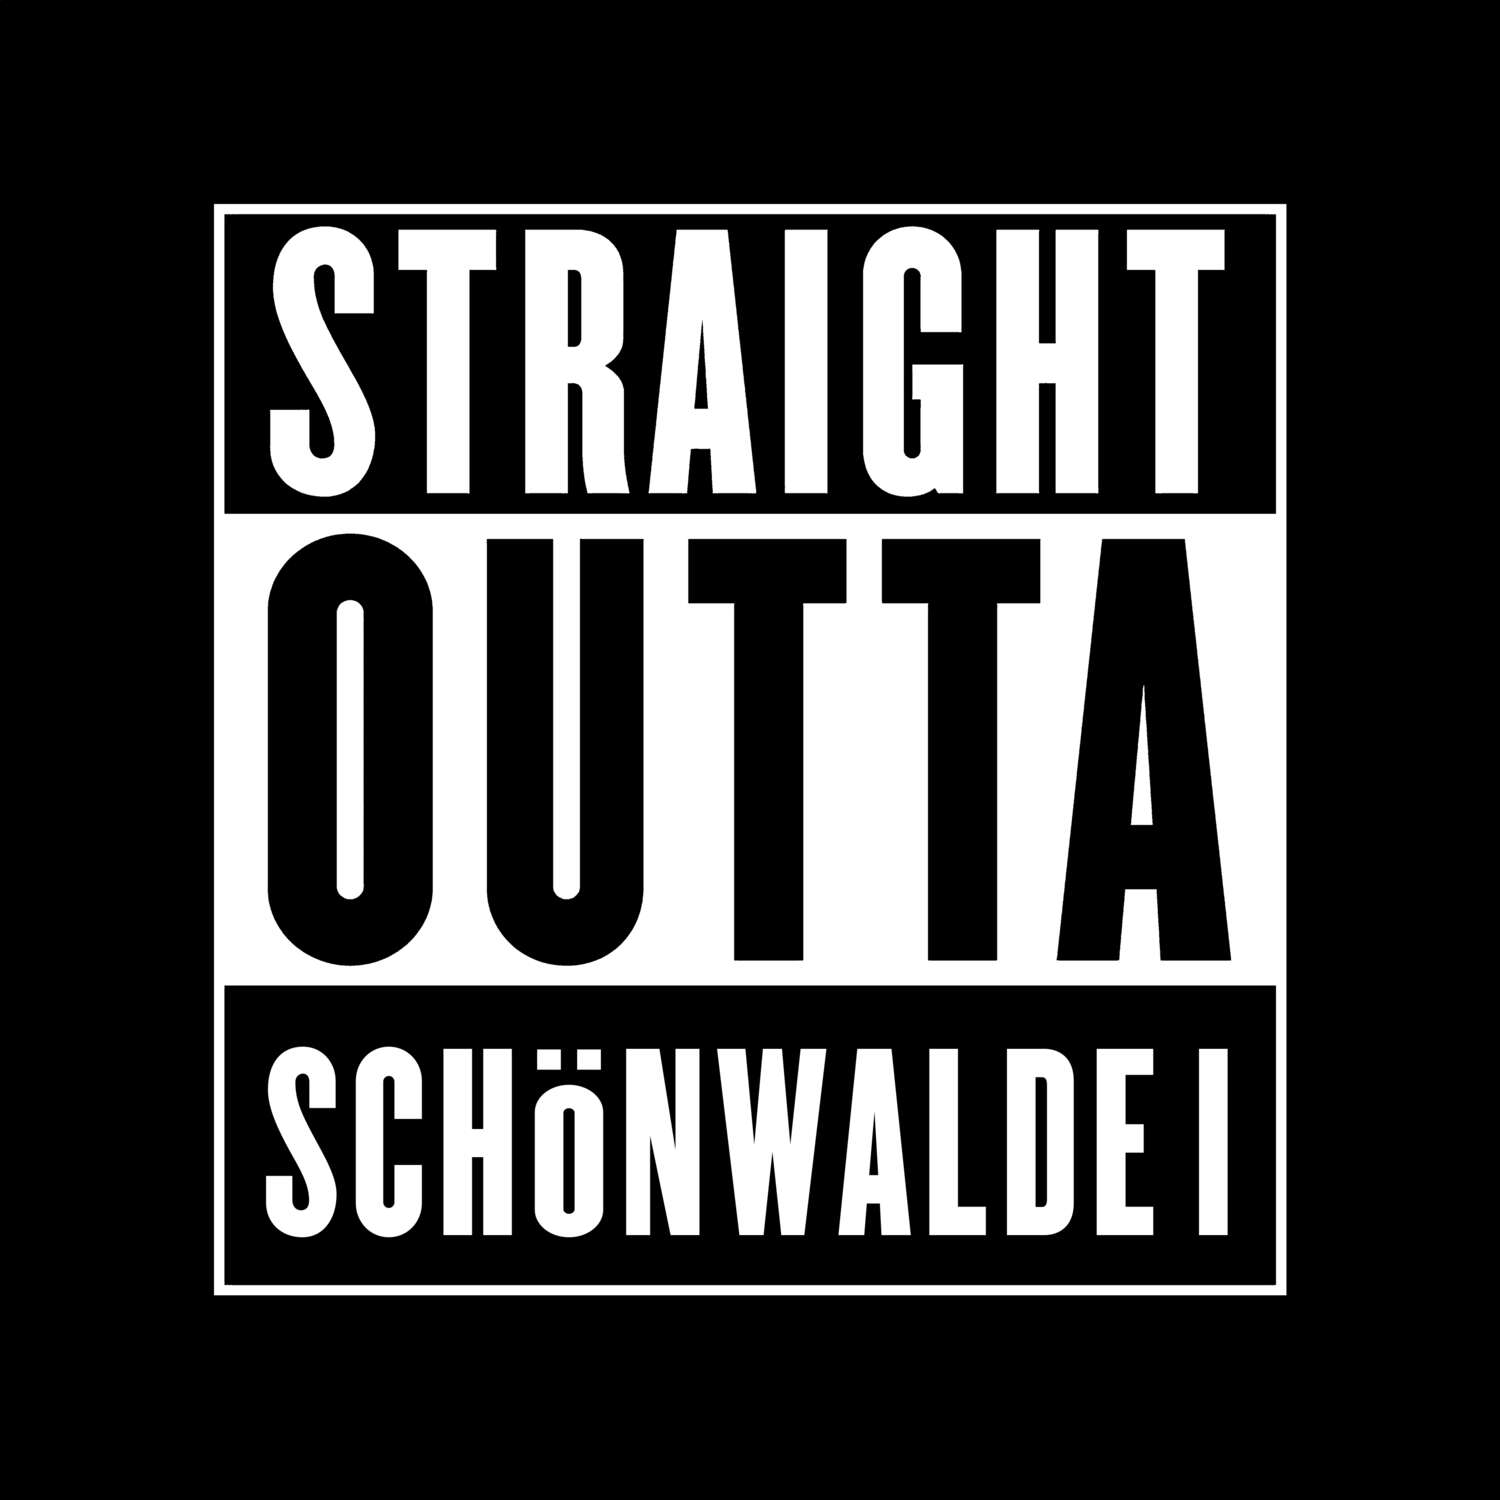 Schönwalde I T-Shirt »Straight Outta«